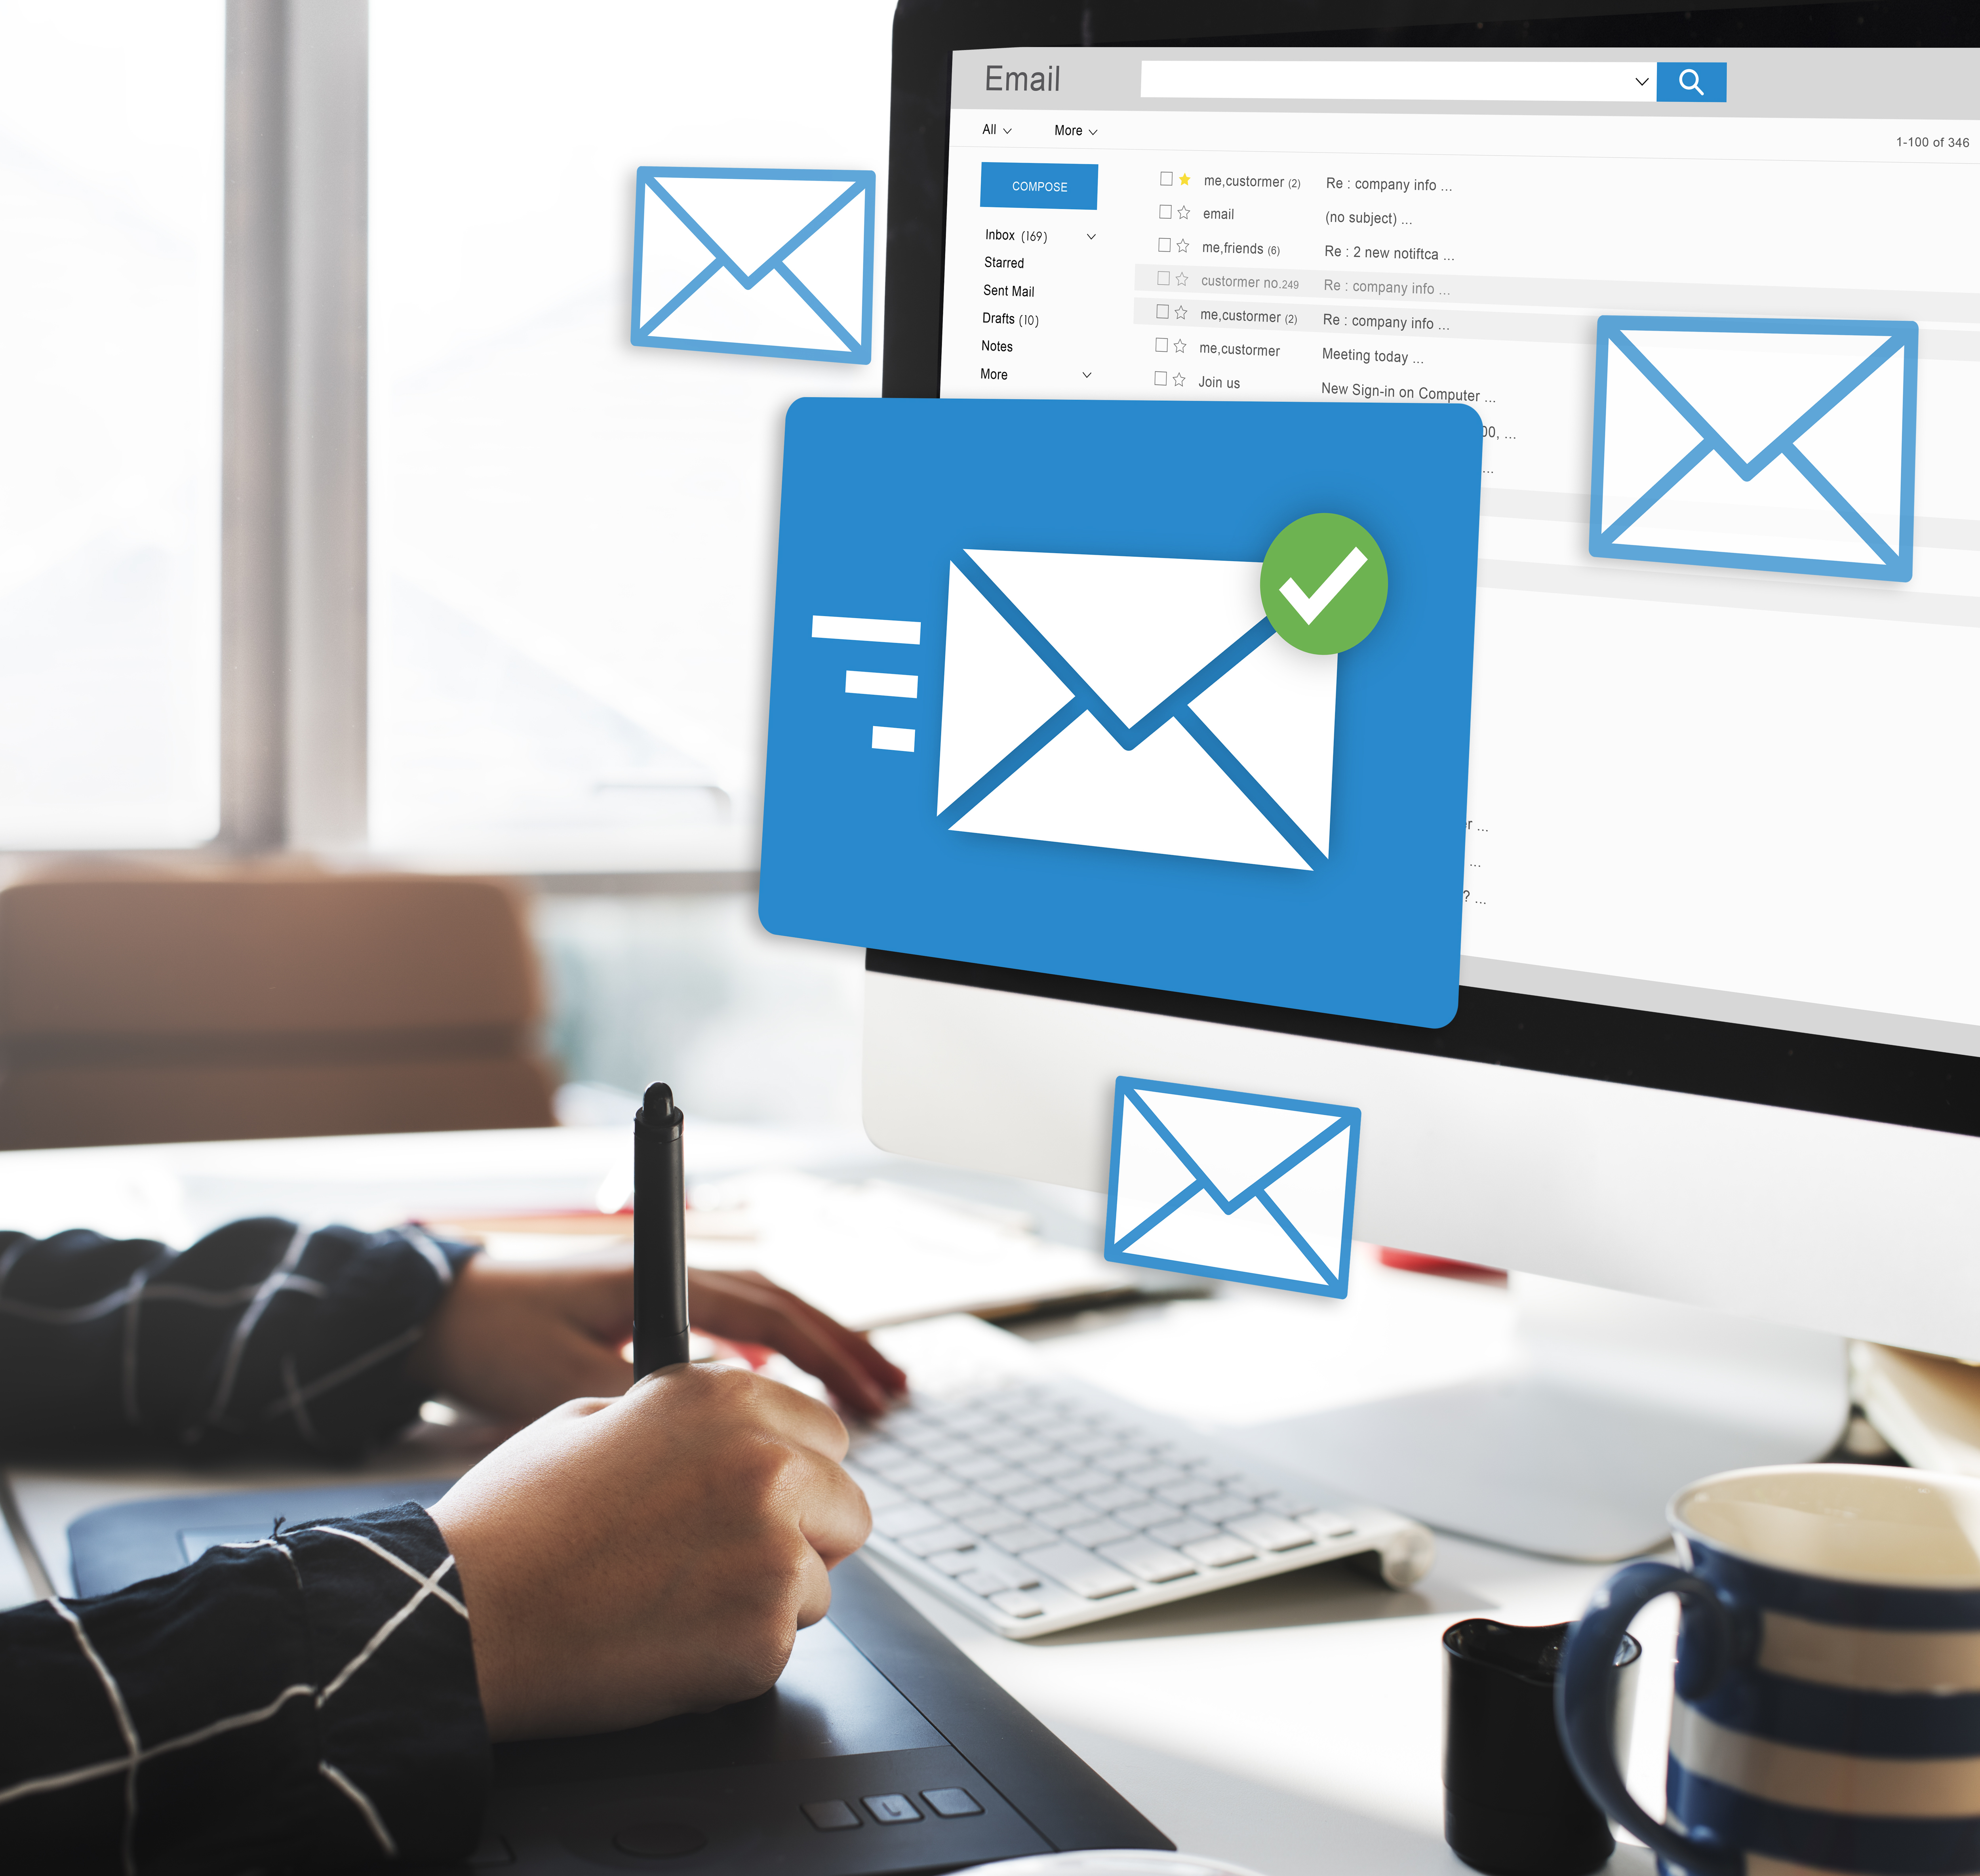 En HP Servicios incluimos en tu presupuesto de diseño web los correos a los que puedes acceder a través de un Webmail, conectar a tu Outlook o dispositivo móvil